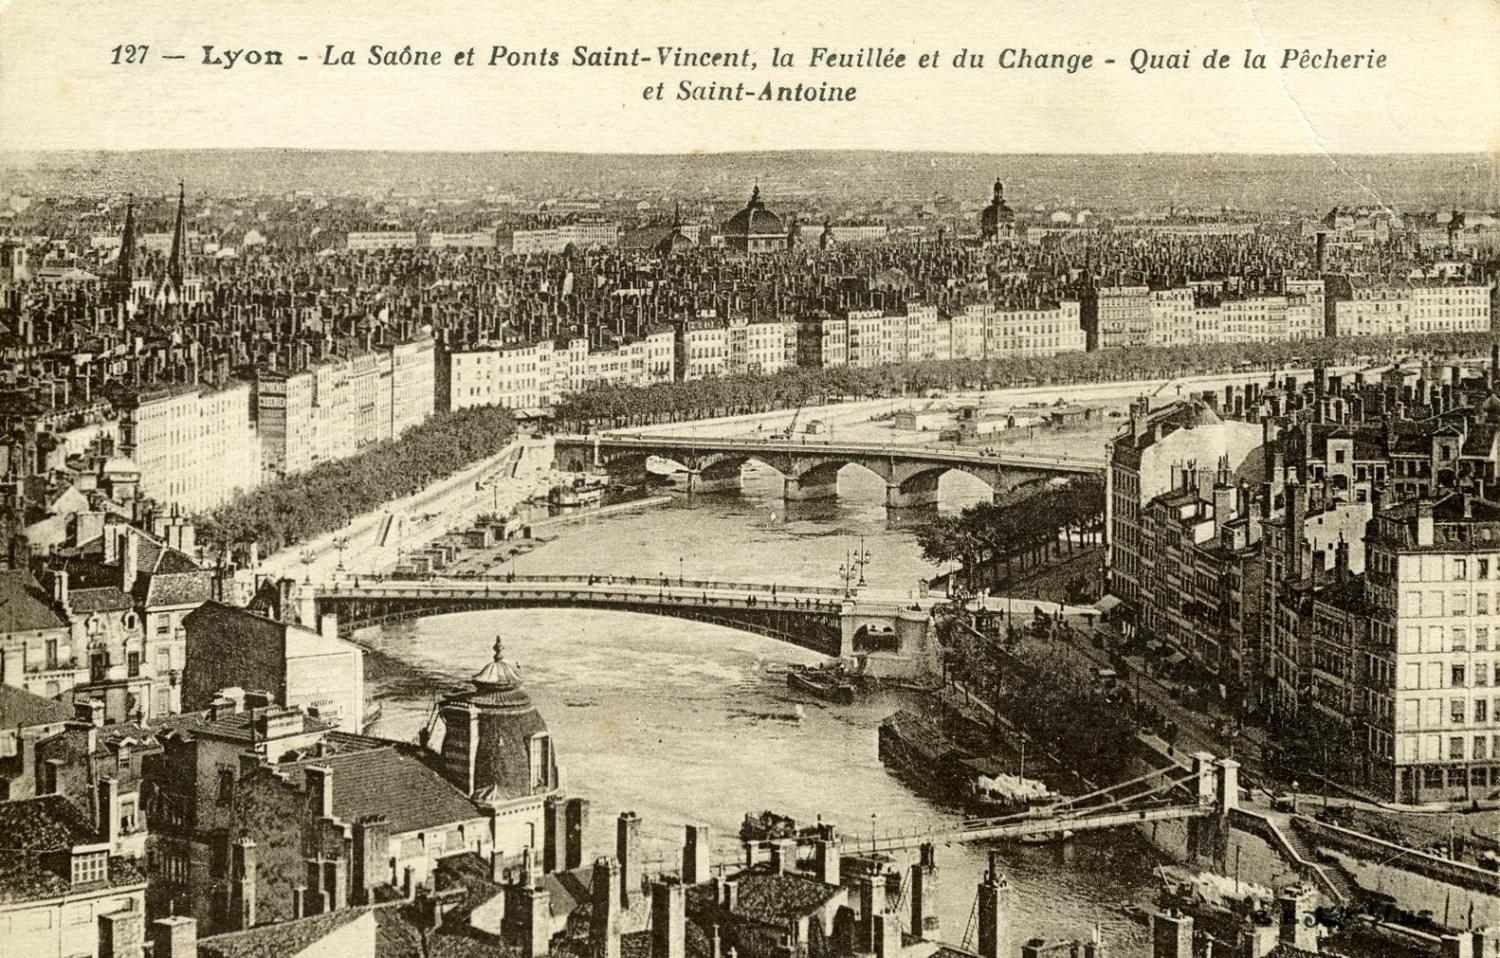 Lyon - La Saône et Ponts Saint-Vincent, la Feuillée et du Change - Quai de la Pêcherie et Saint-Antoine